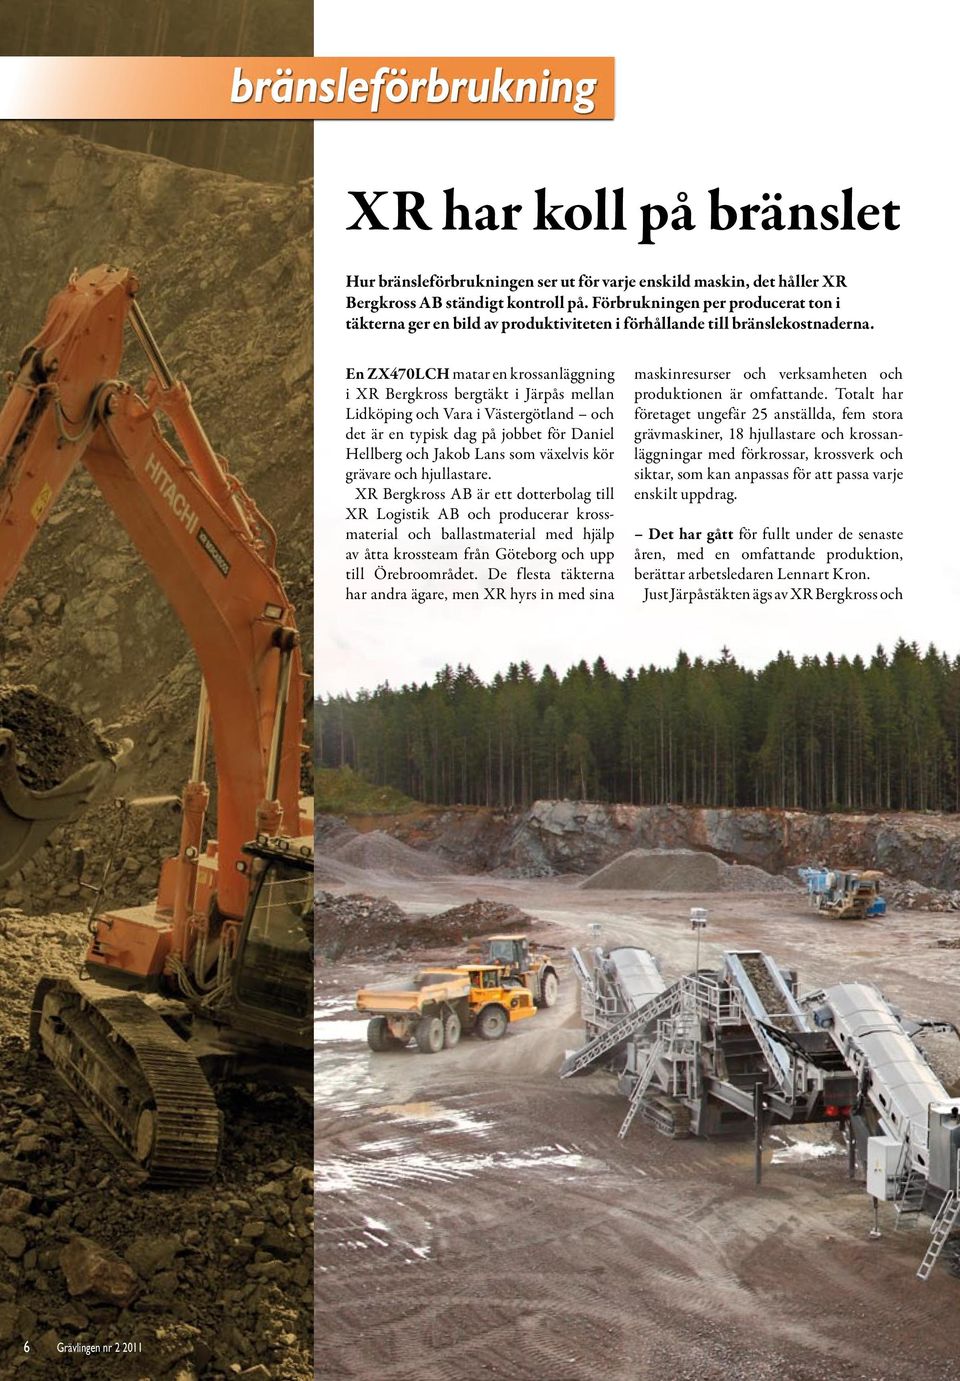 En ZX470LCH matar en krossanläggning i XR Bergkross bergtäkt i Järpås mellan Lidköping och Vara i Västergötland och det är en typisk dag på jobbet för Daniel Hellberg och Jakob Lans som växelvis kör